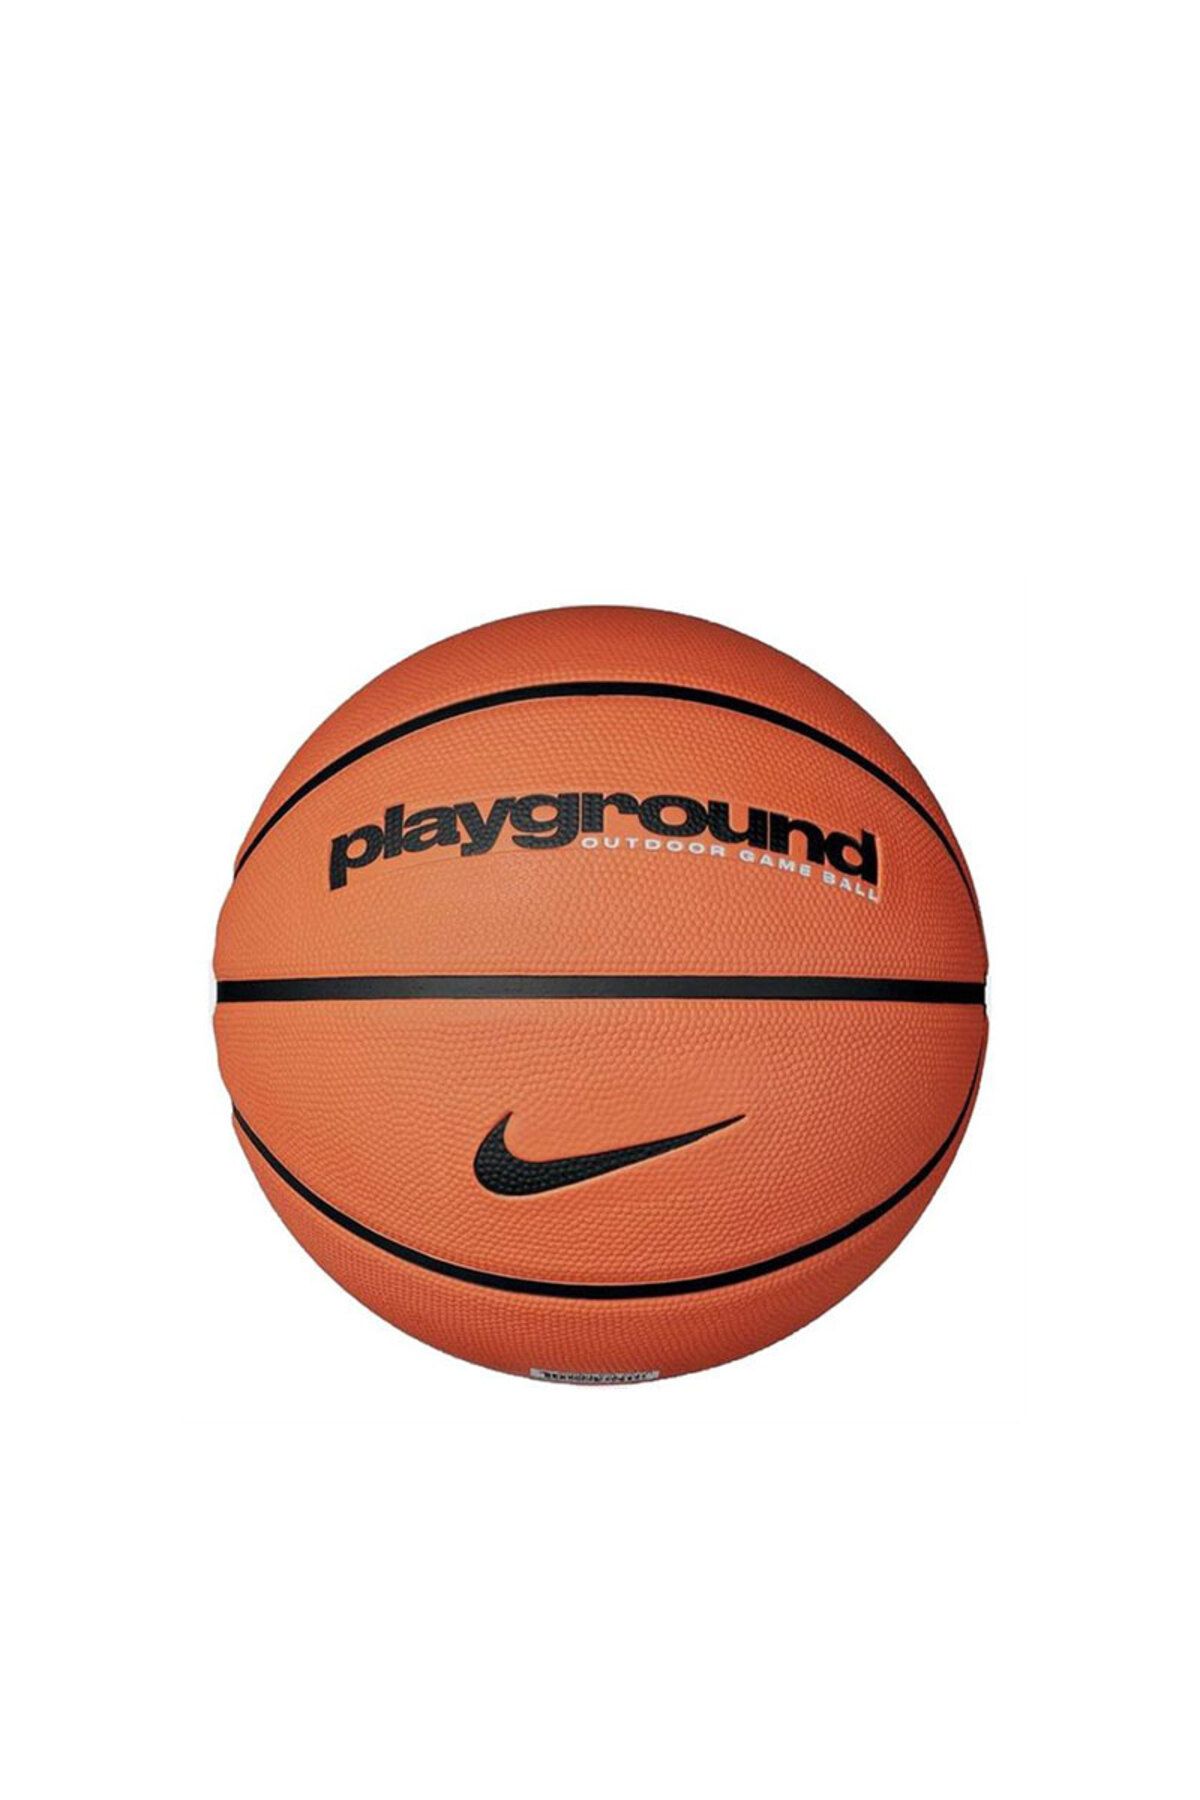 Nike Everyday Playground 8p Deflated